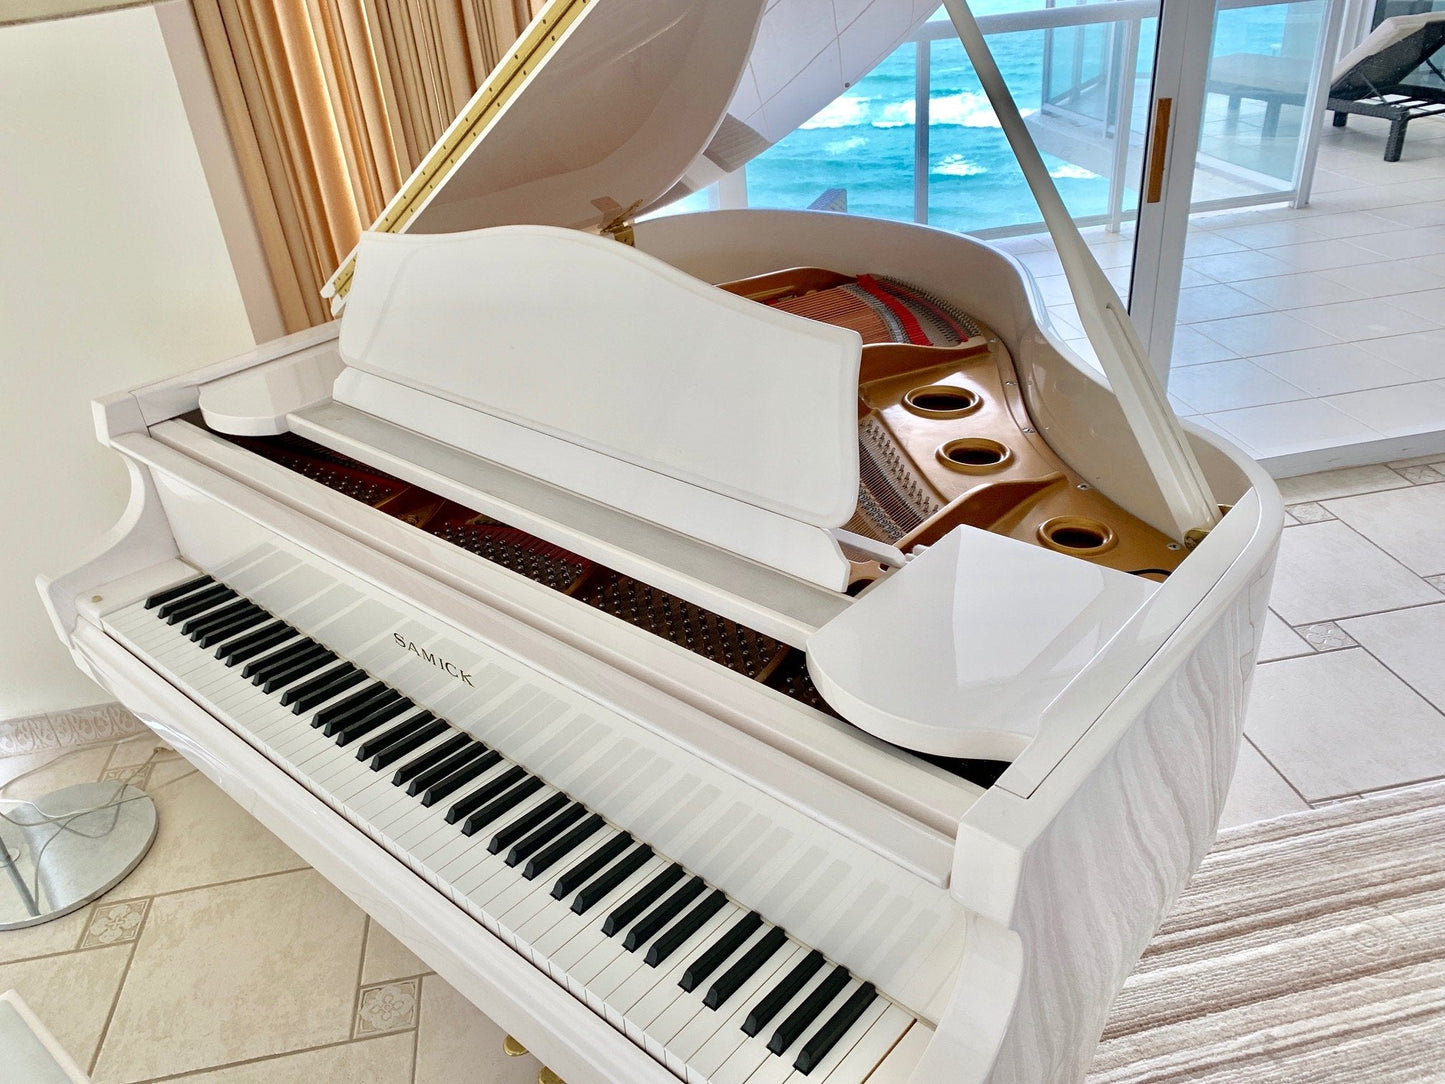 Samick White Baby Grand Piano in Miami